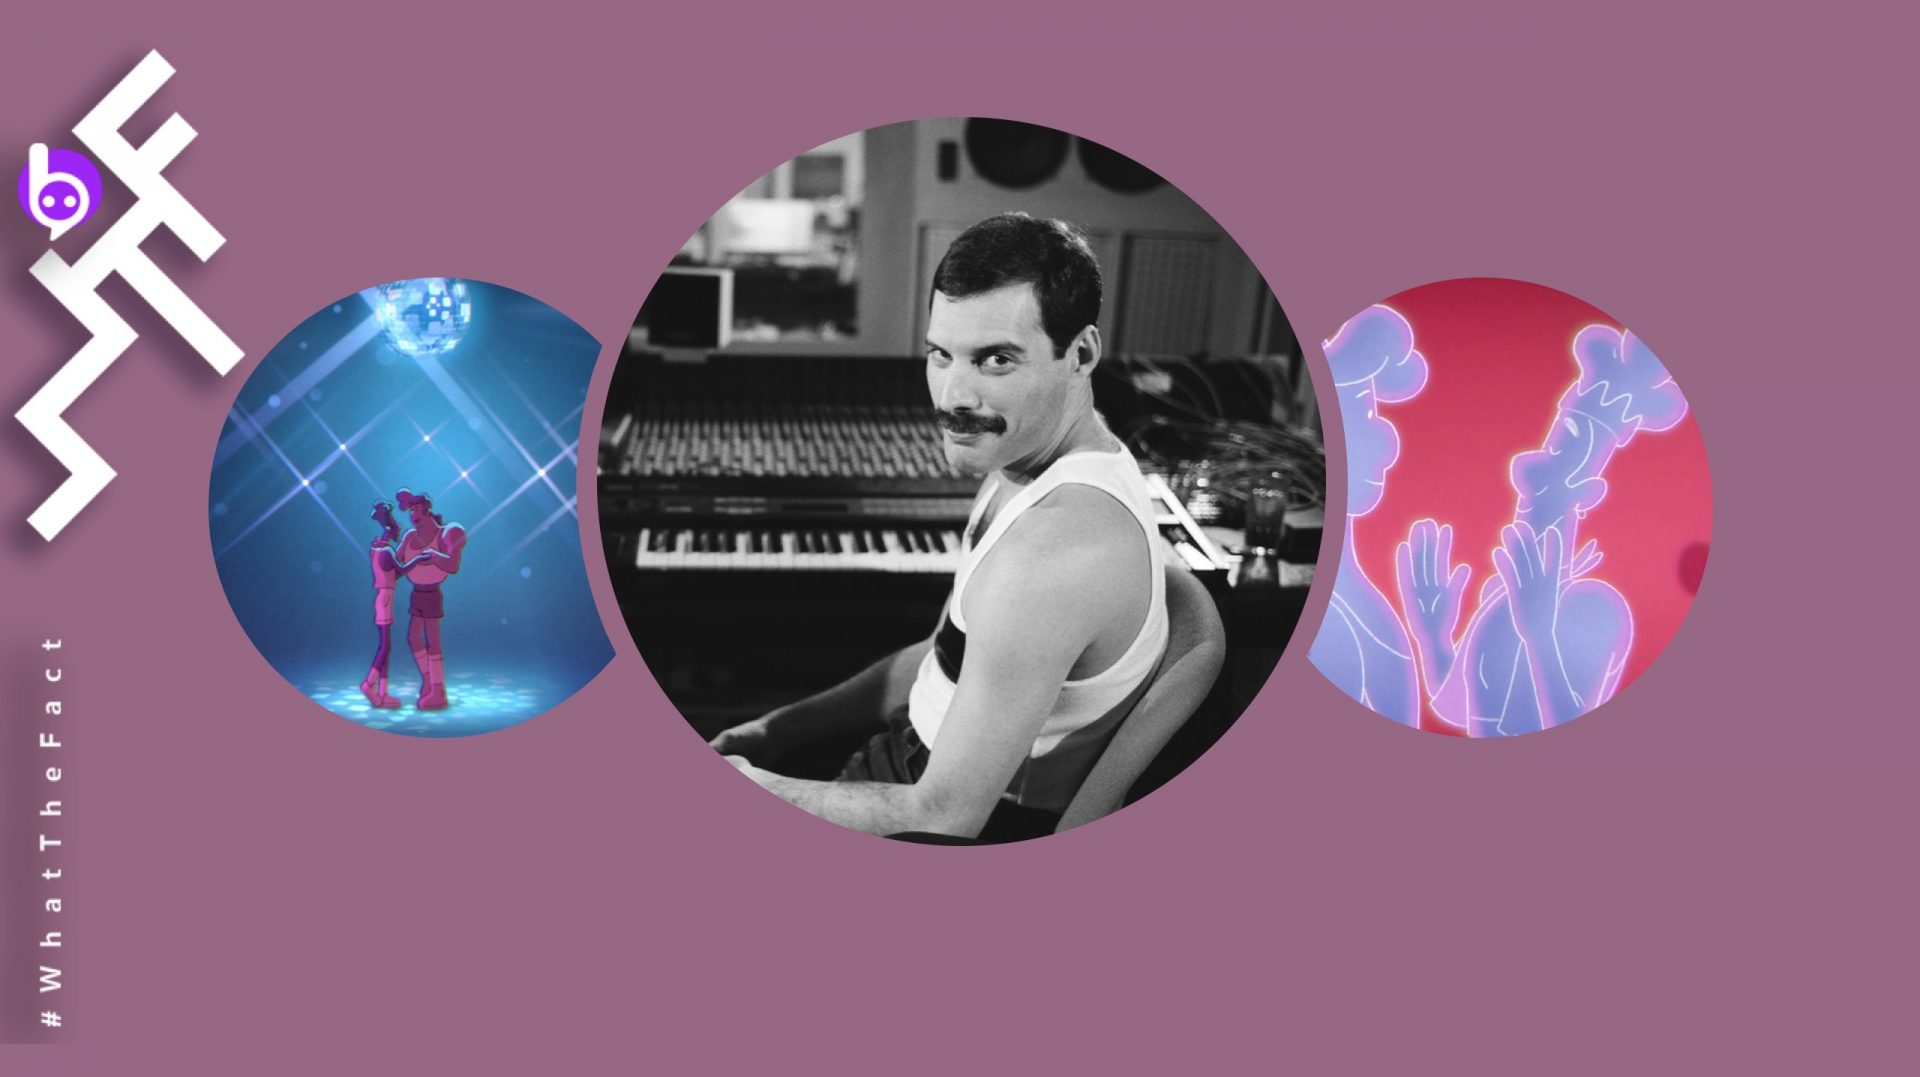 งดงามและซาบซึ้ง !! ชม MV ‘Love Me Like There’s No Tomorrow’ งานเดี่ยวของ Freddie Mercury ในรูปแบบแอนิเมชัน